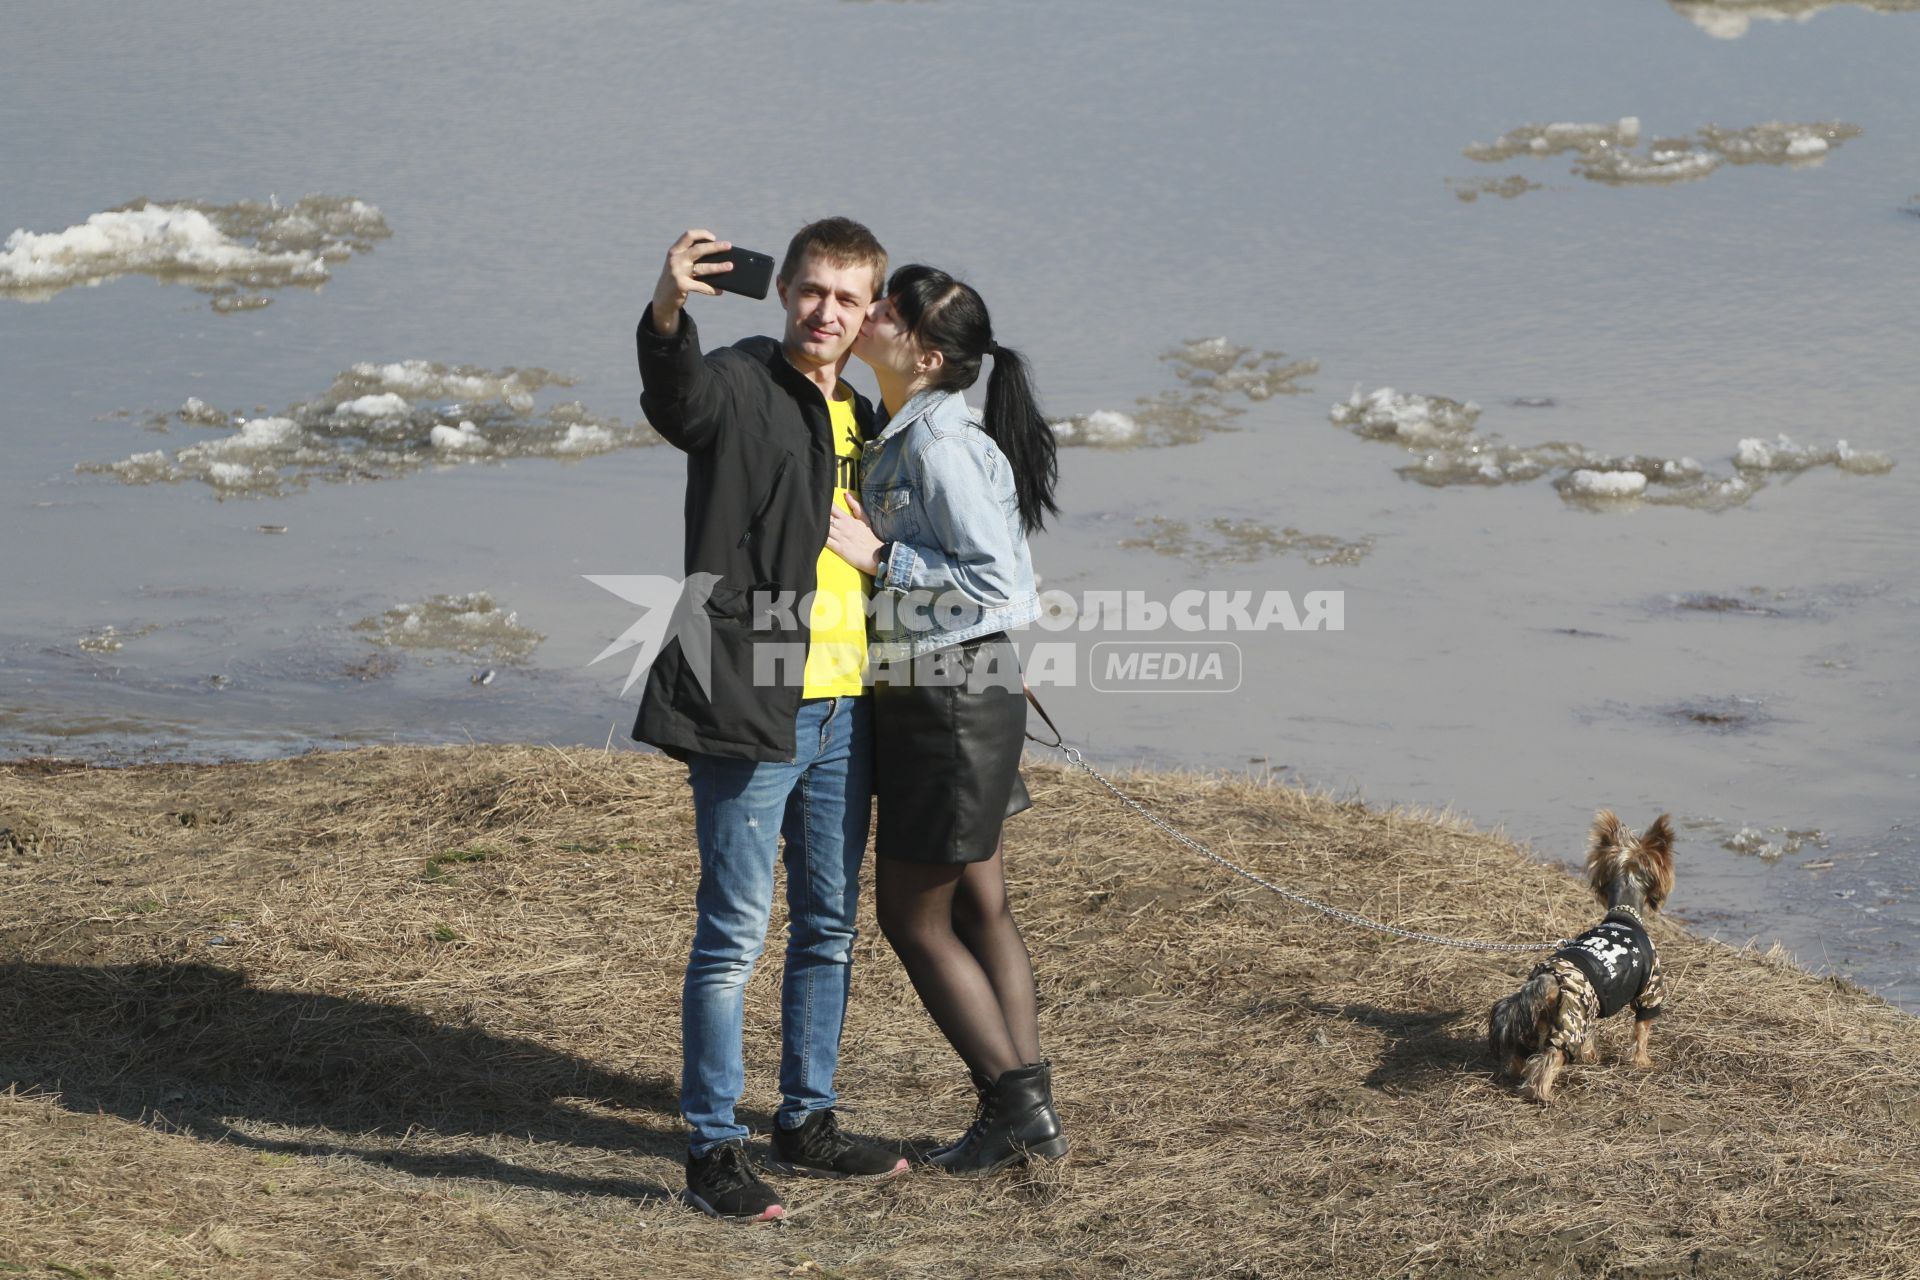 Барнаул. Молодая пара делает сефи на фоне реки Обь.